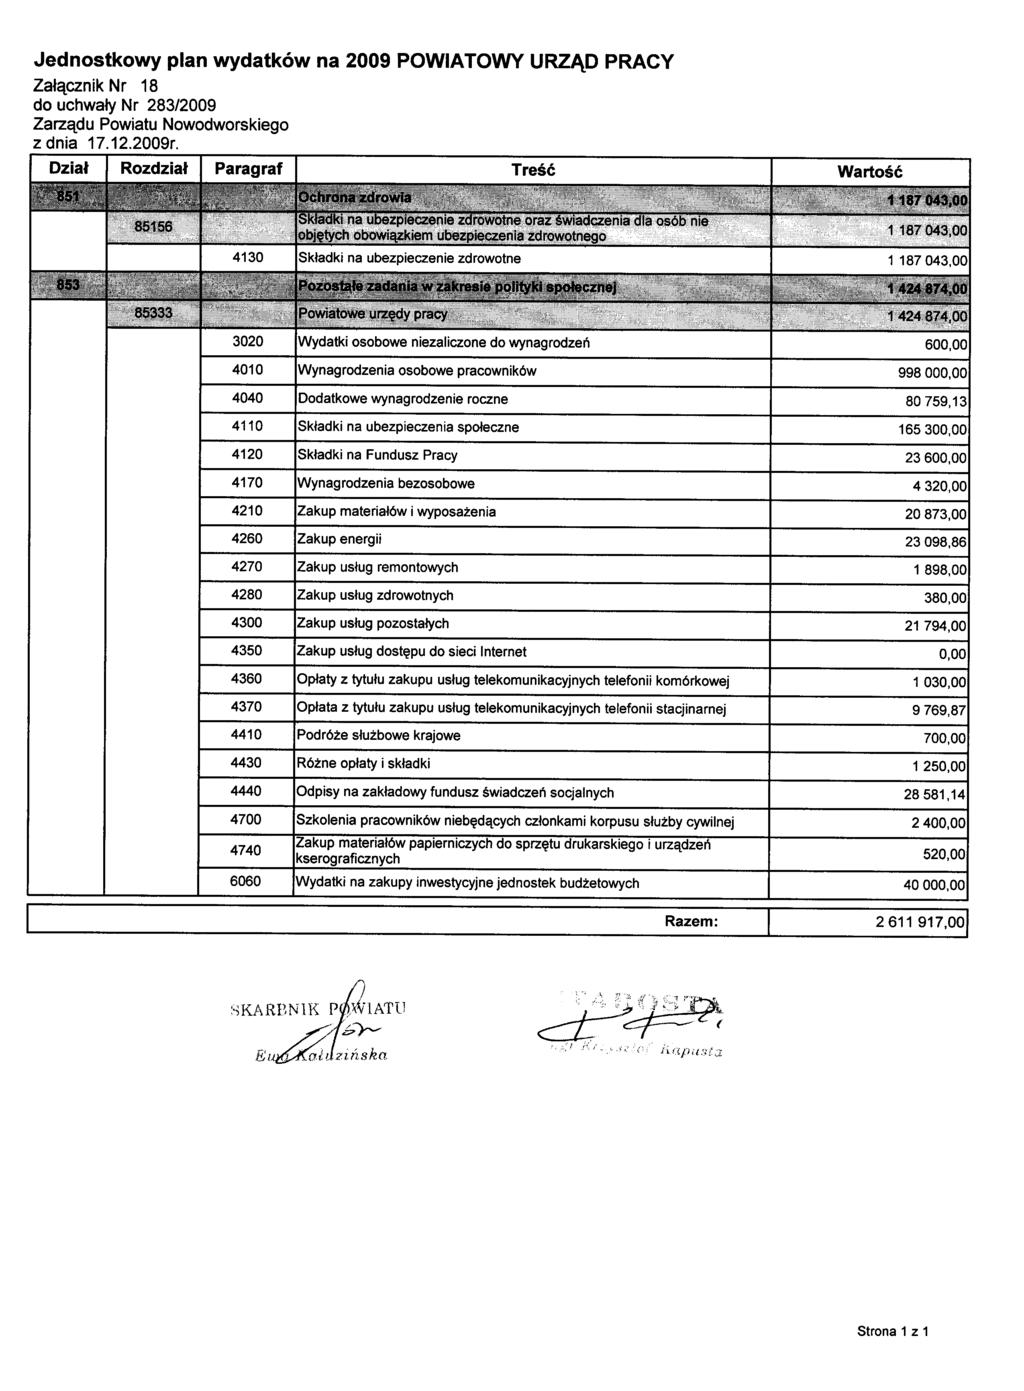 Jednostkowy plan wydatków na 2009 POWIATOWY URZĄD PRACY Załącznik Nr 18 z dnia 17.12.2009r.